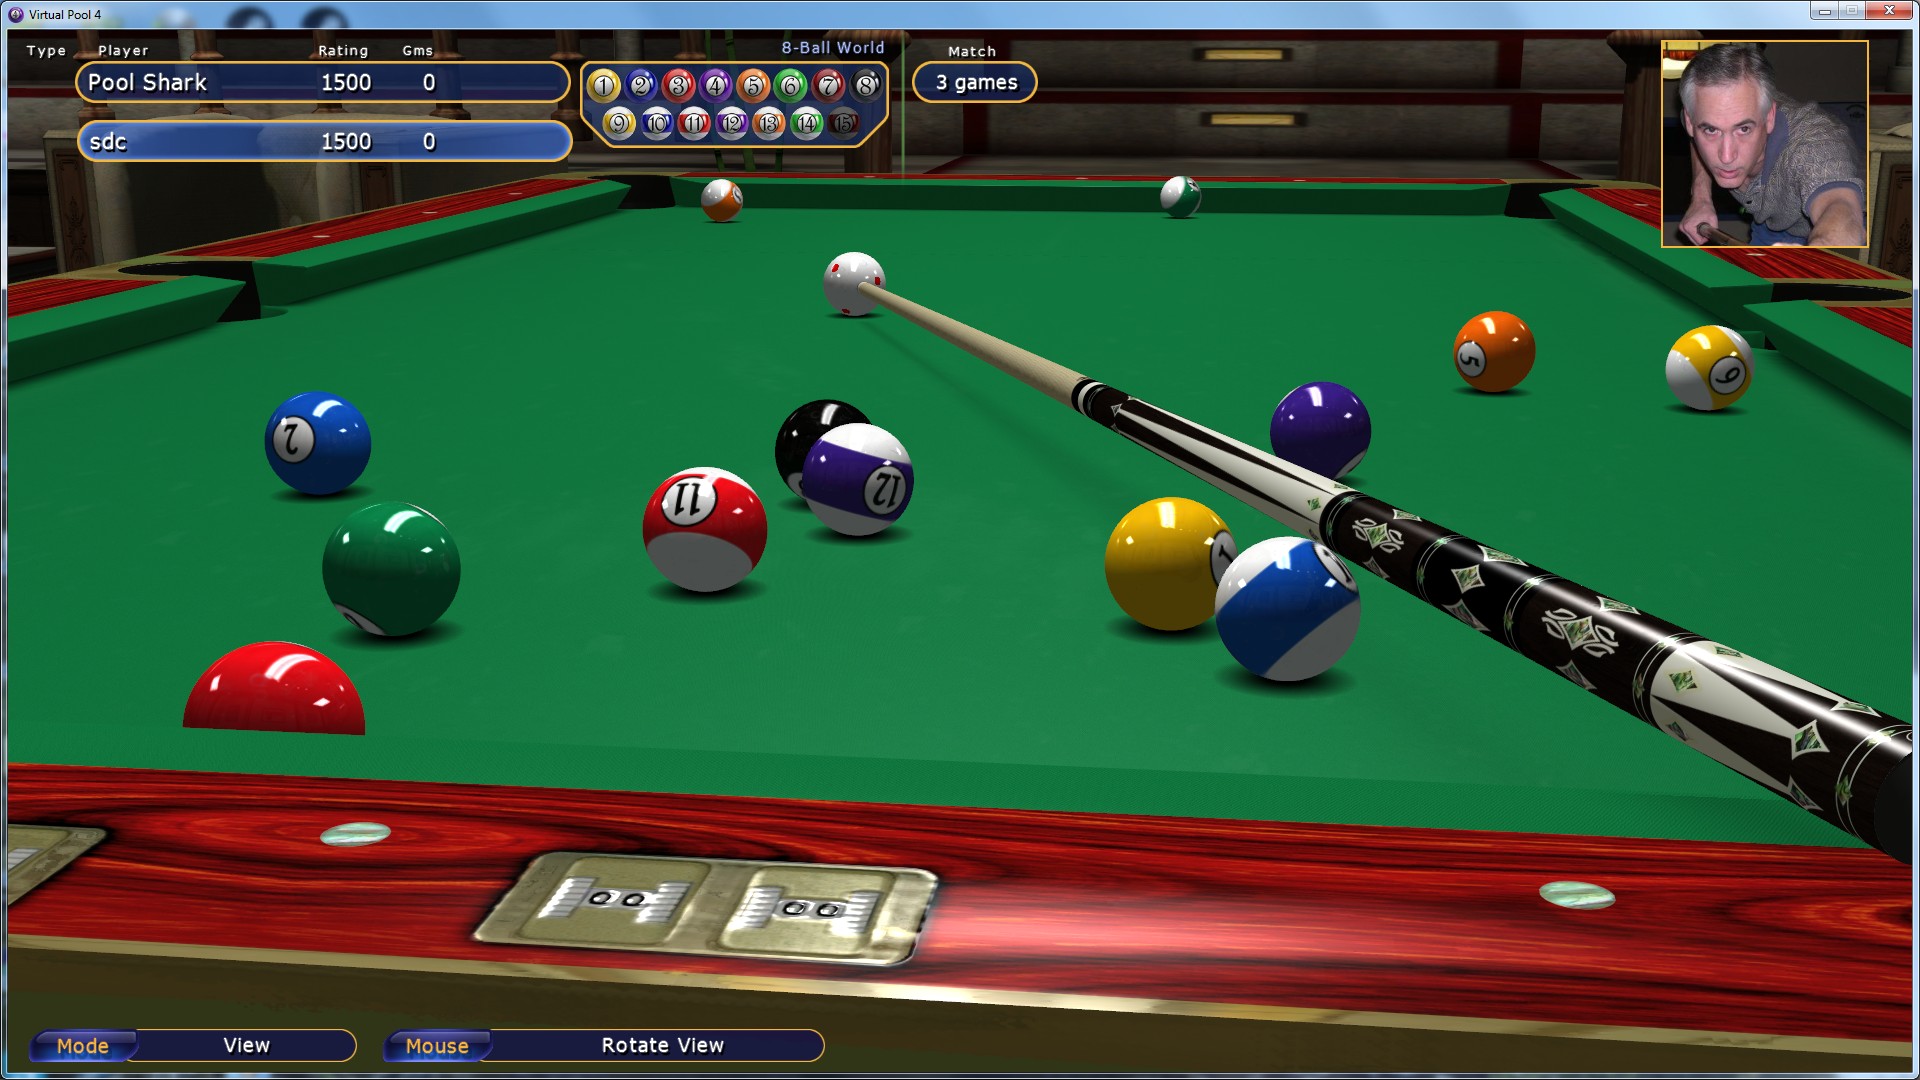 Snooker, um jogo que, além da diversão, traz muitos outros benefícios -  Portal Cordero Virtual